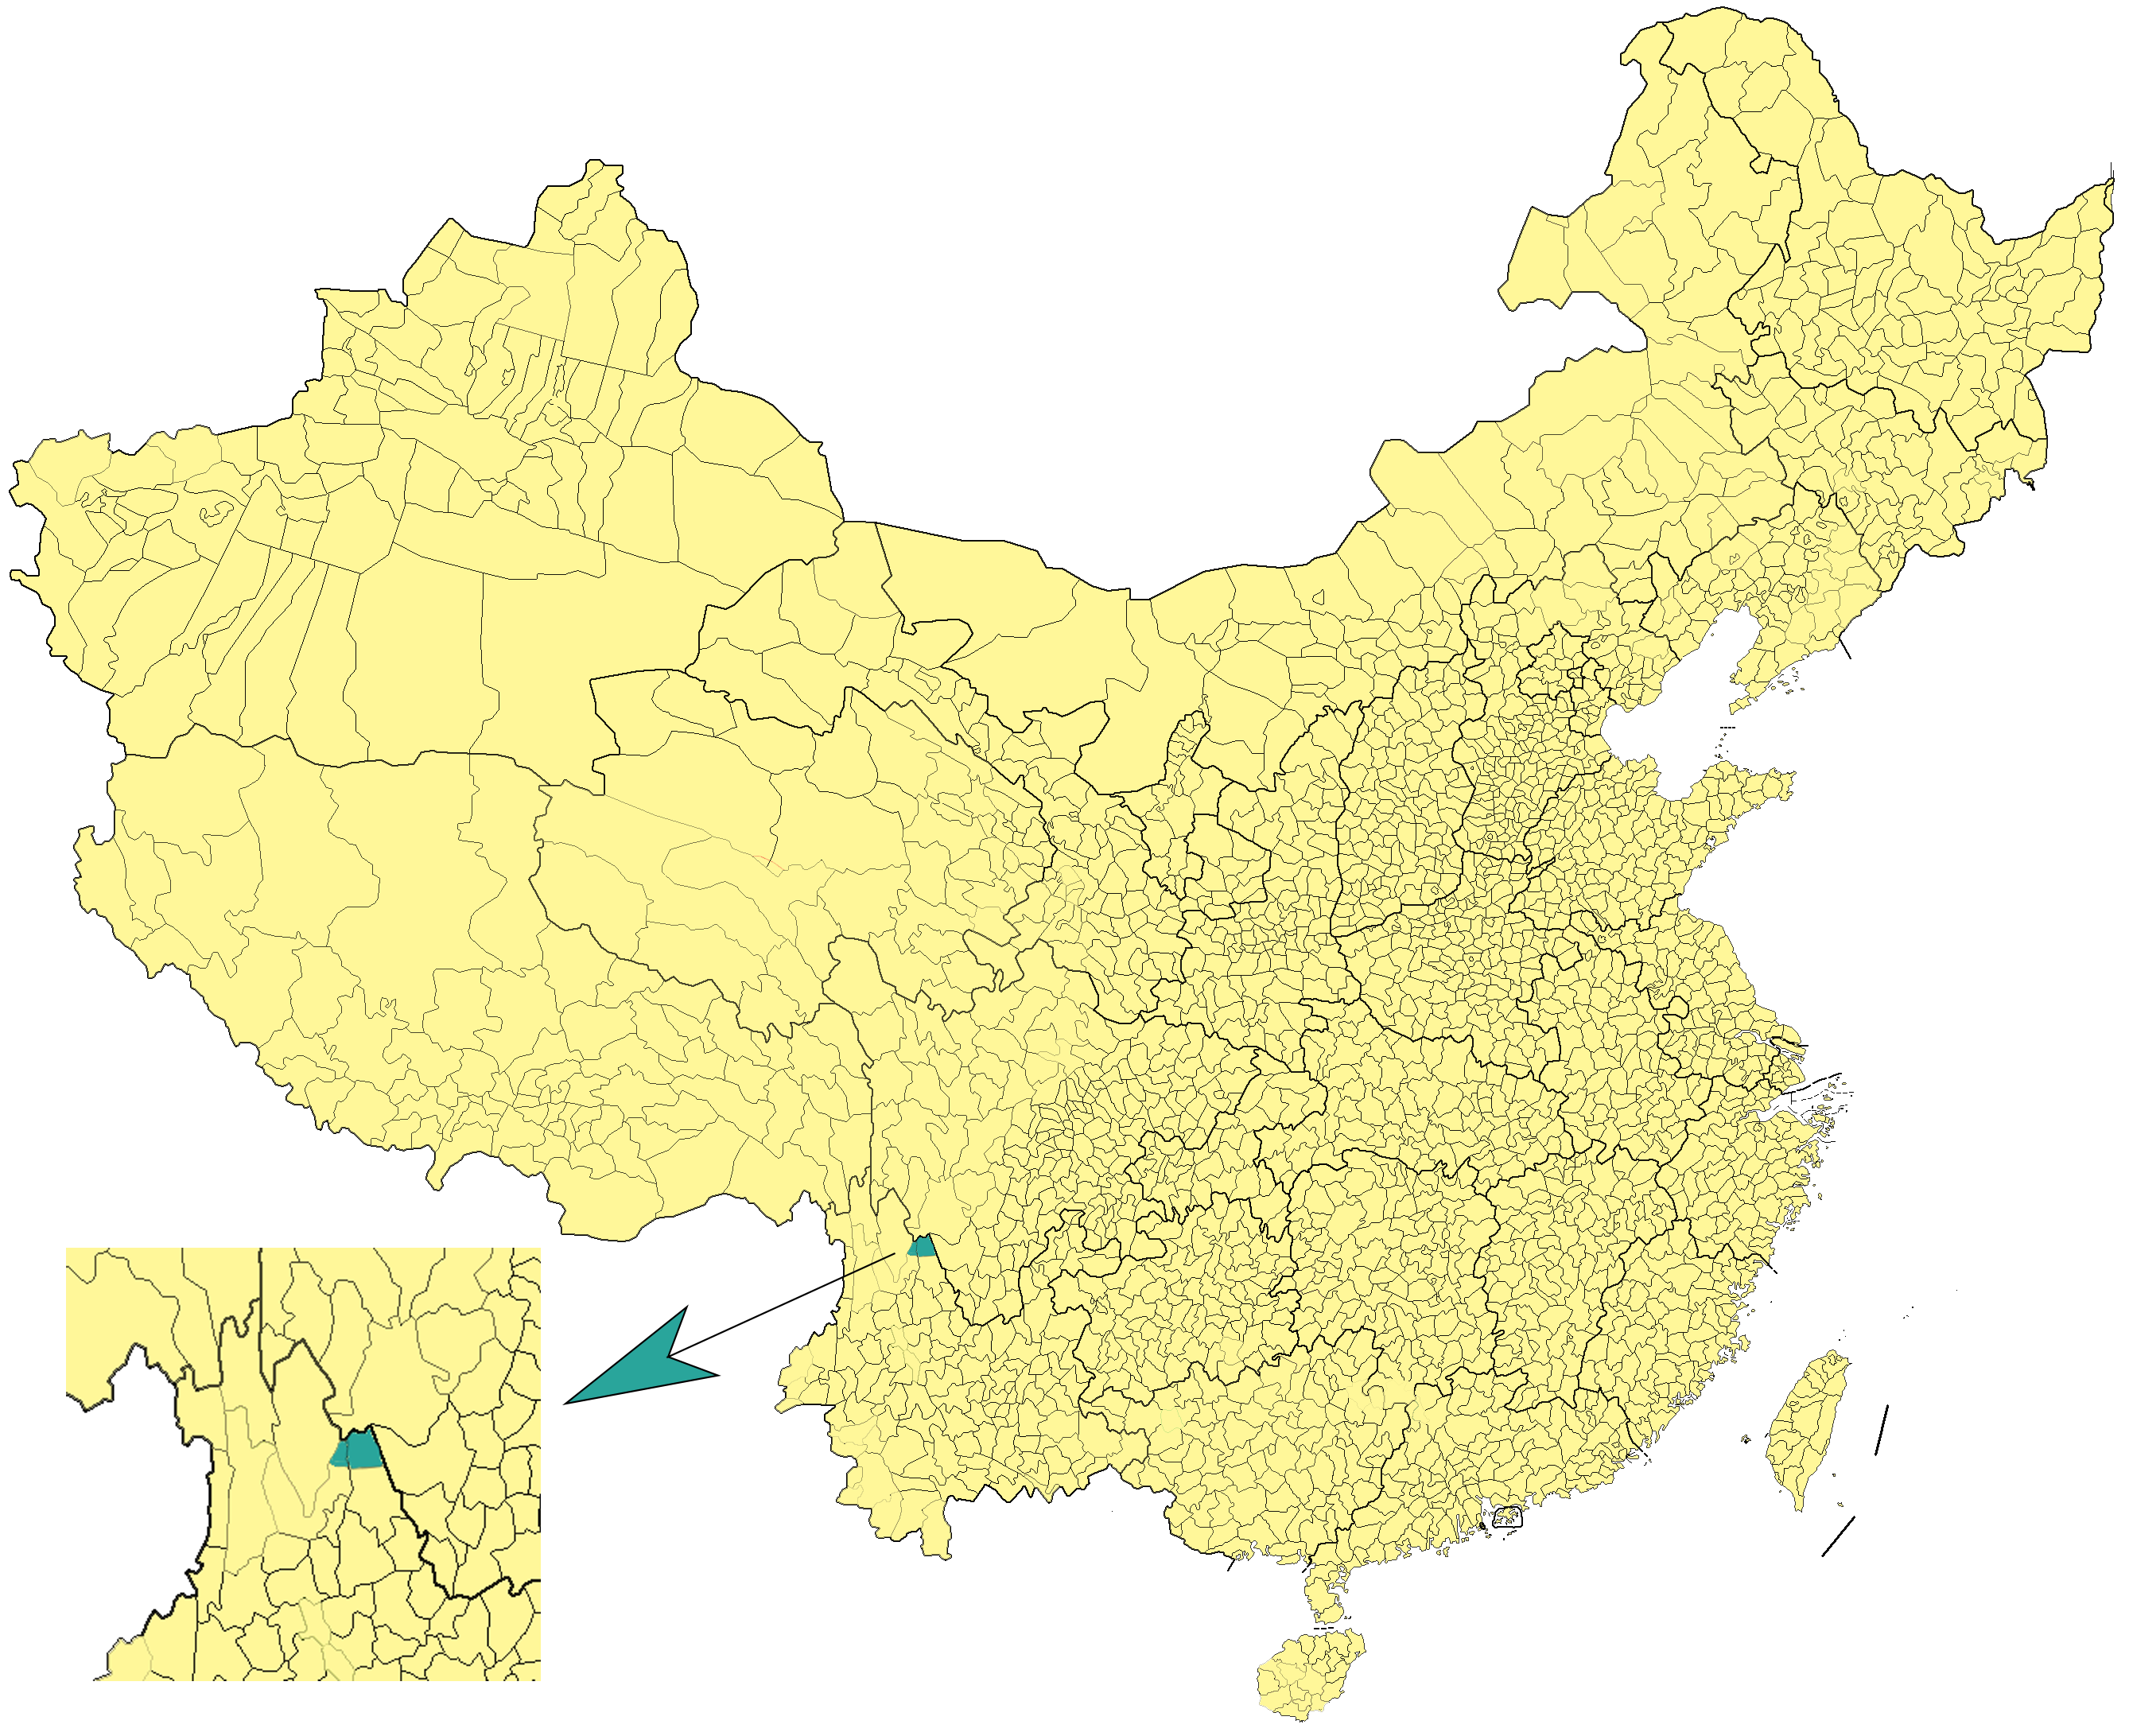 Mosuo Ethnic Minority